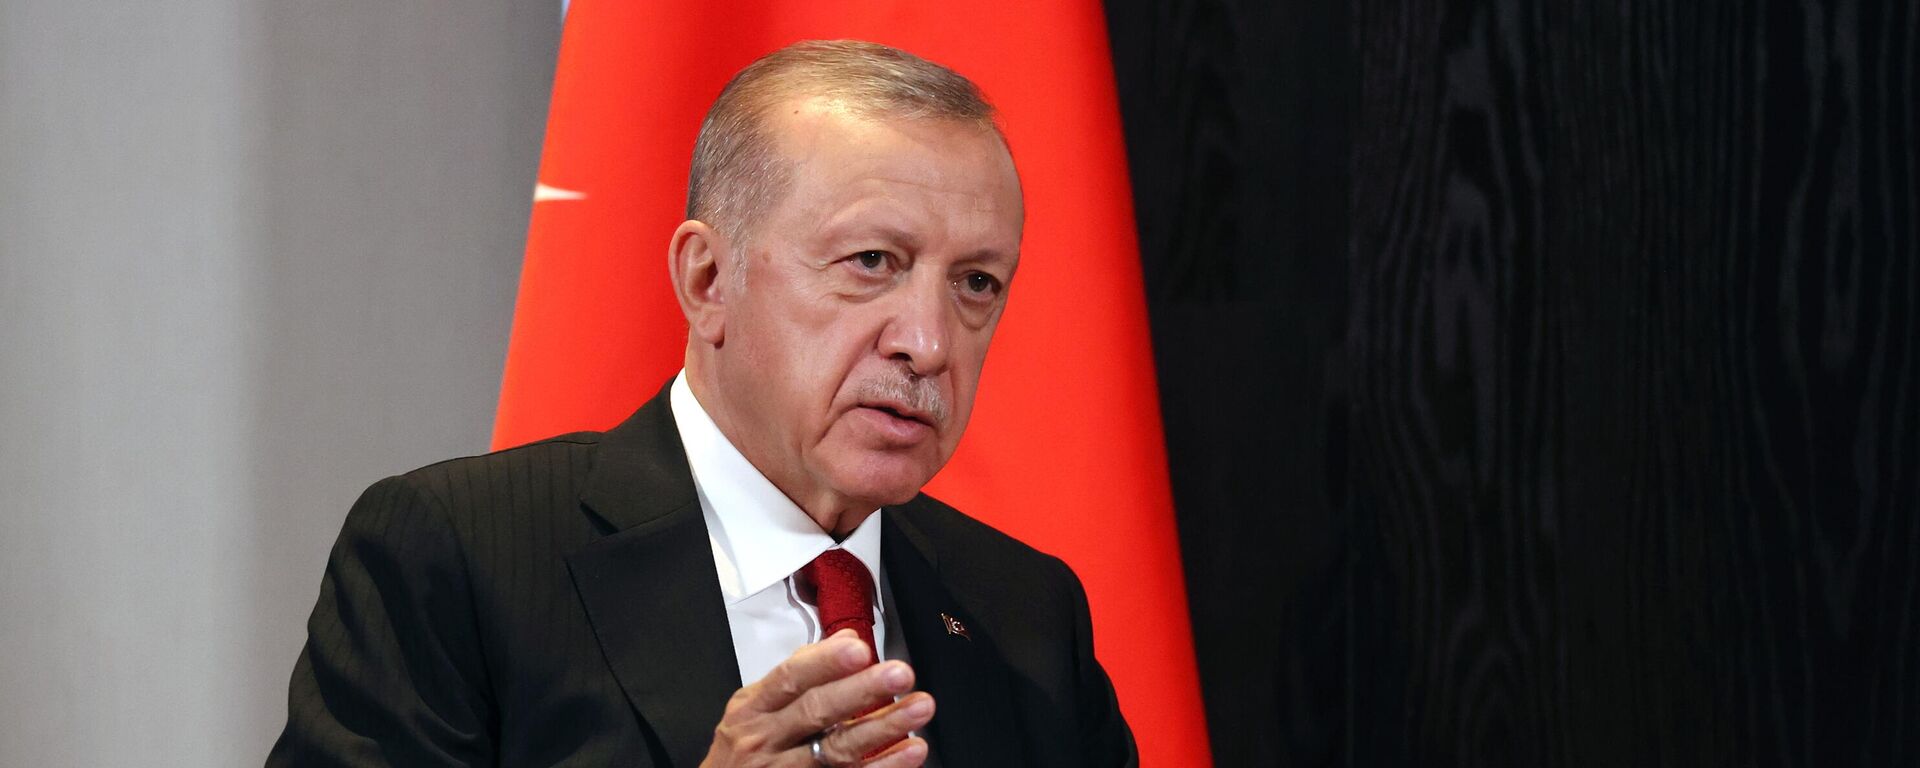 Recep Tayyip Erdogan, presidente de Turquía - Sputnik Mundo, 1920, 12.11.2022